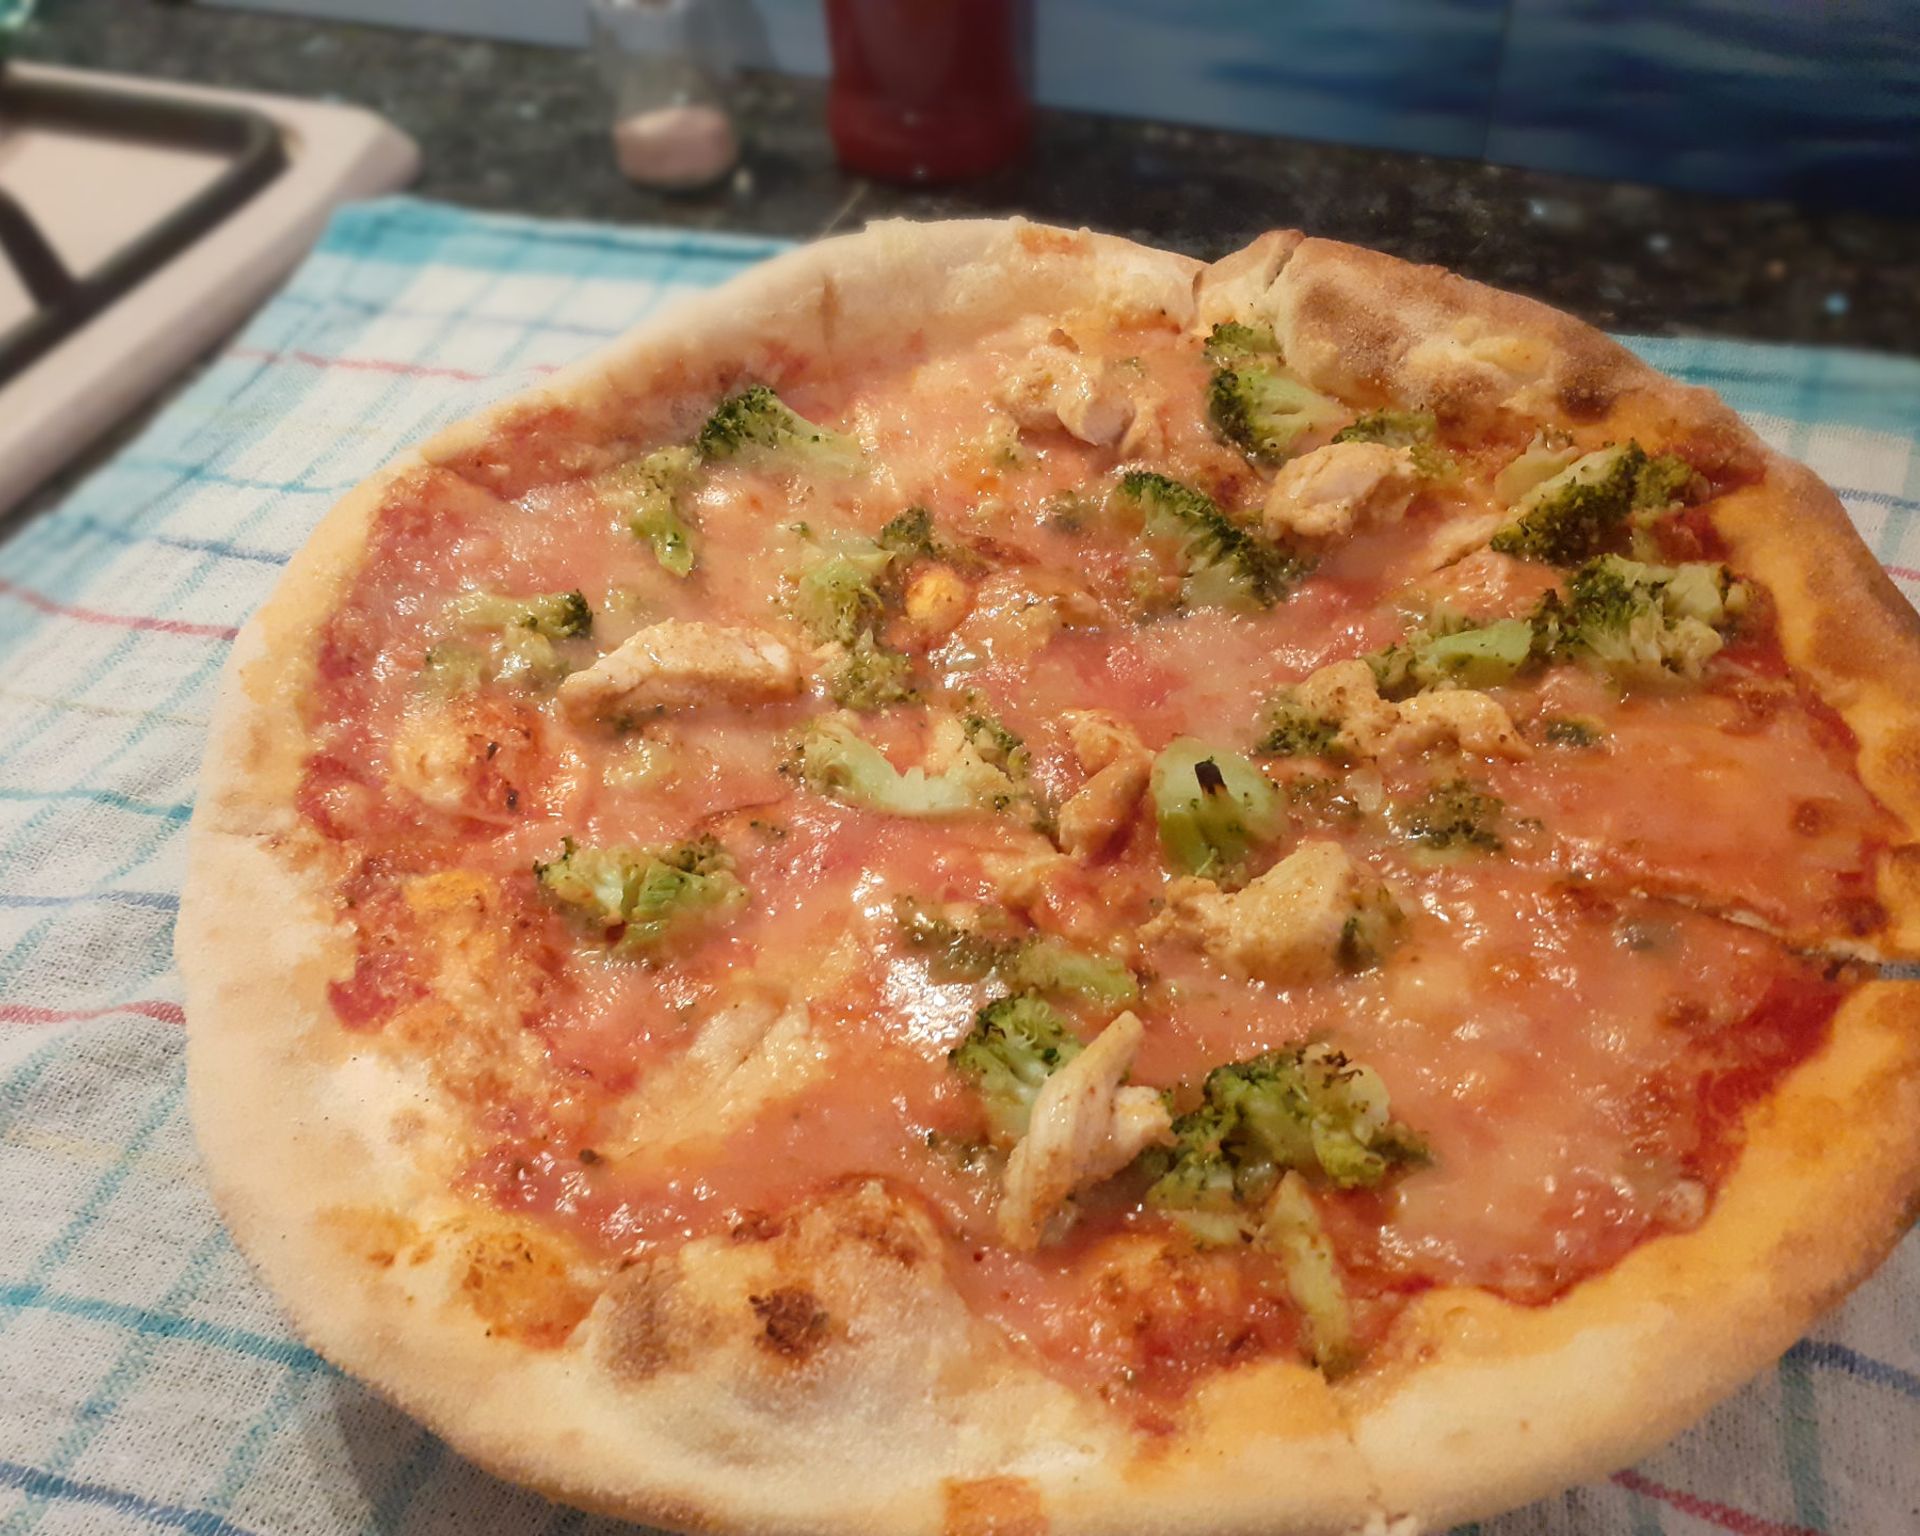 Doma pečená okrúhla pizza z klasického cesta ozdobená kuraťom a šunkou, brokolica